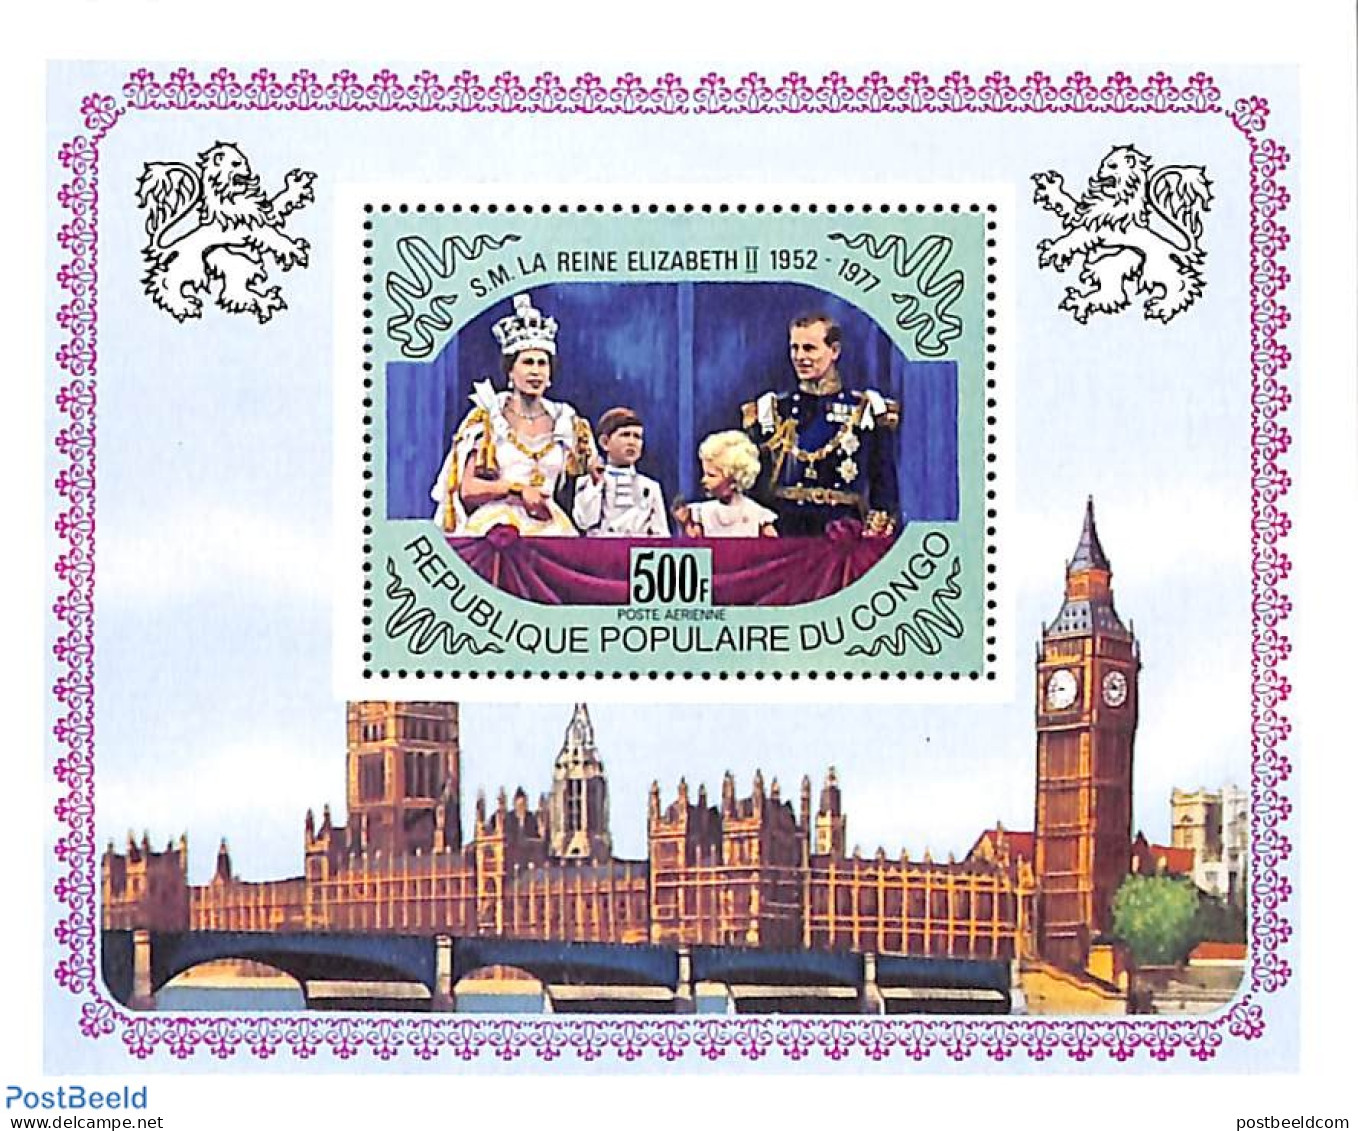 Congo Republic 1977 Elizabeth II Silver Jubilee S/s, Mint NH, History - Kings & Queens (Royalty) - Königshäuser, Adel